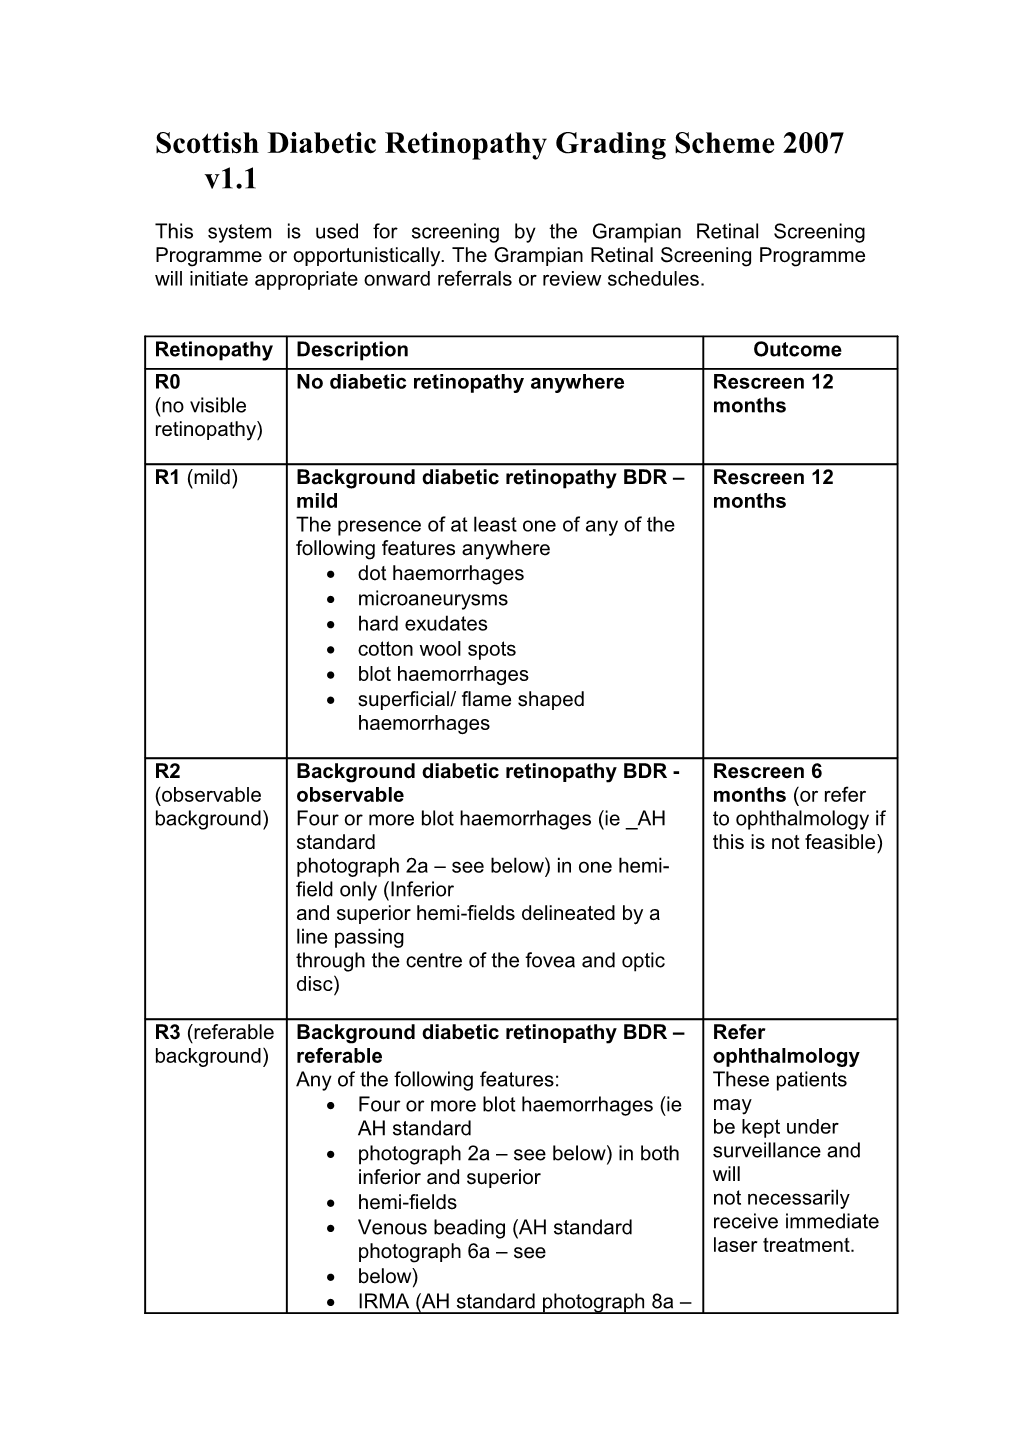 Scottish Diabetic Retinopathy Grading Scheme 2007 V1